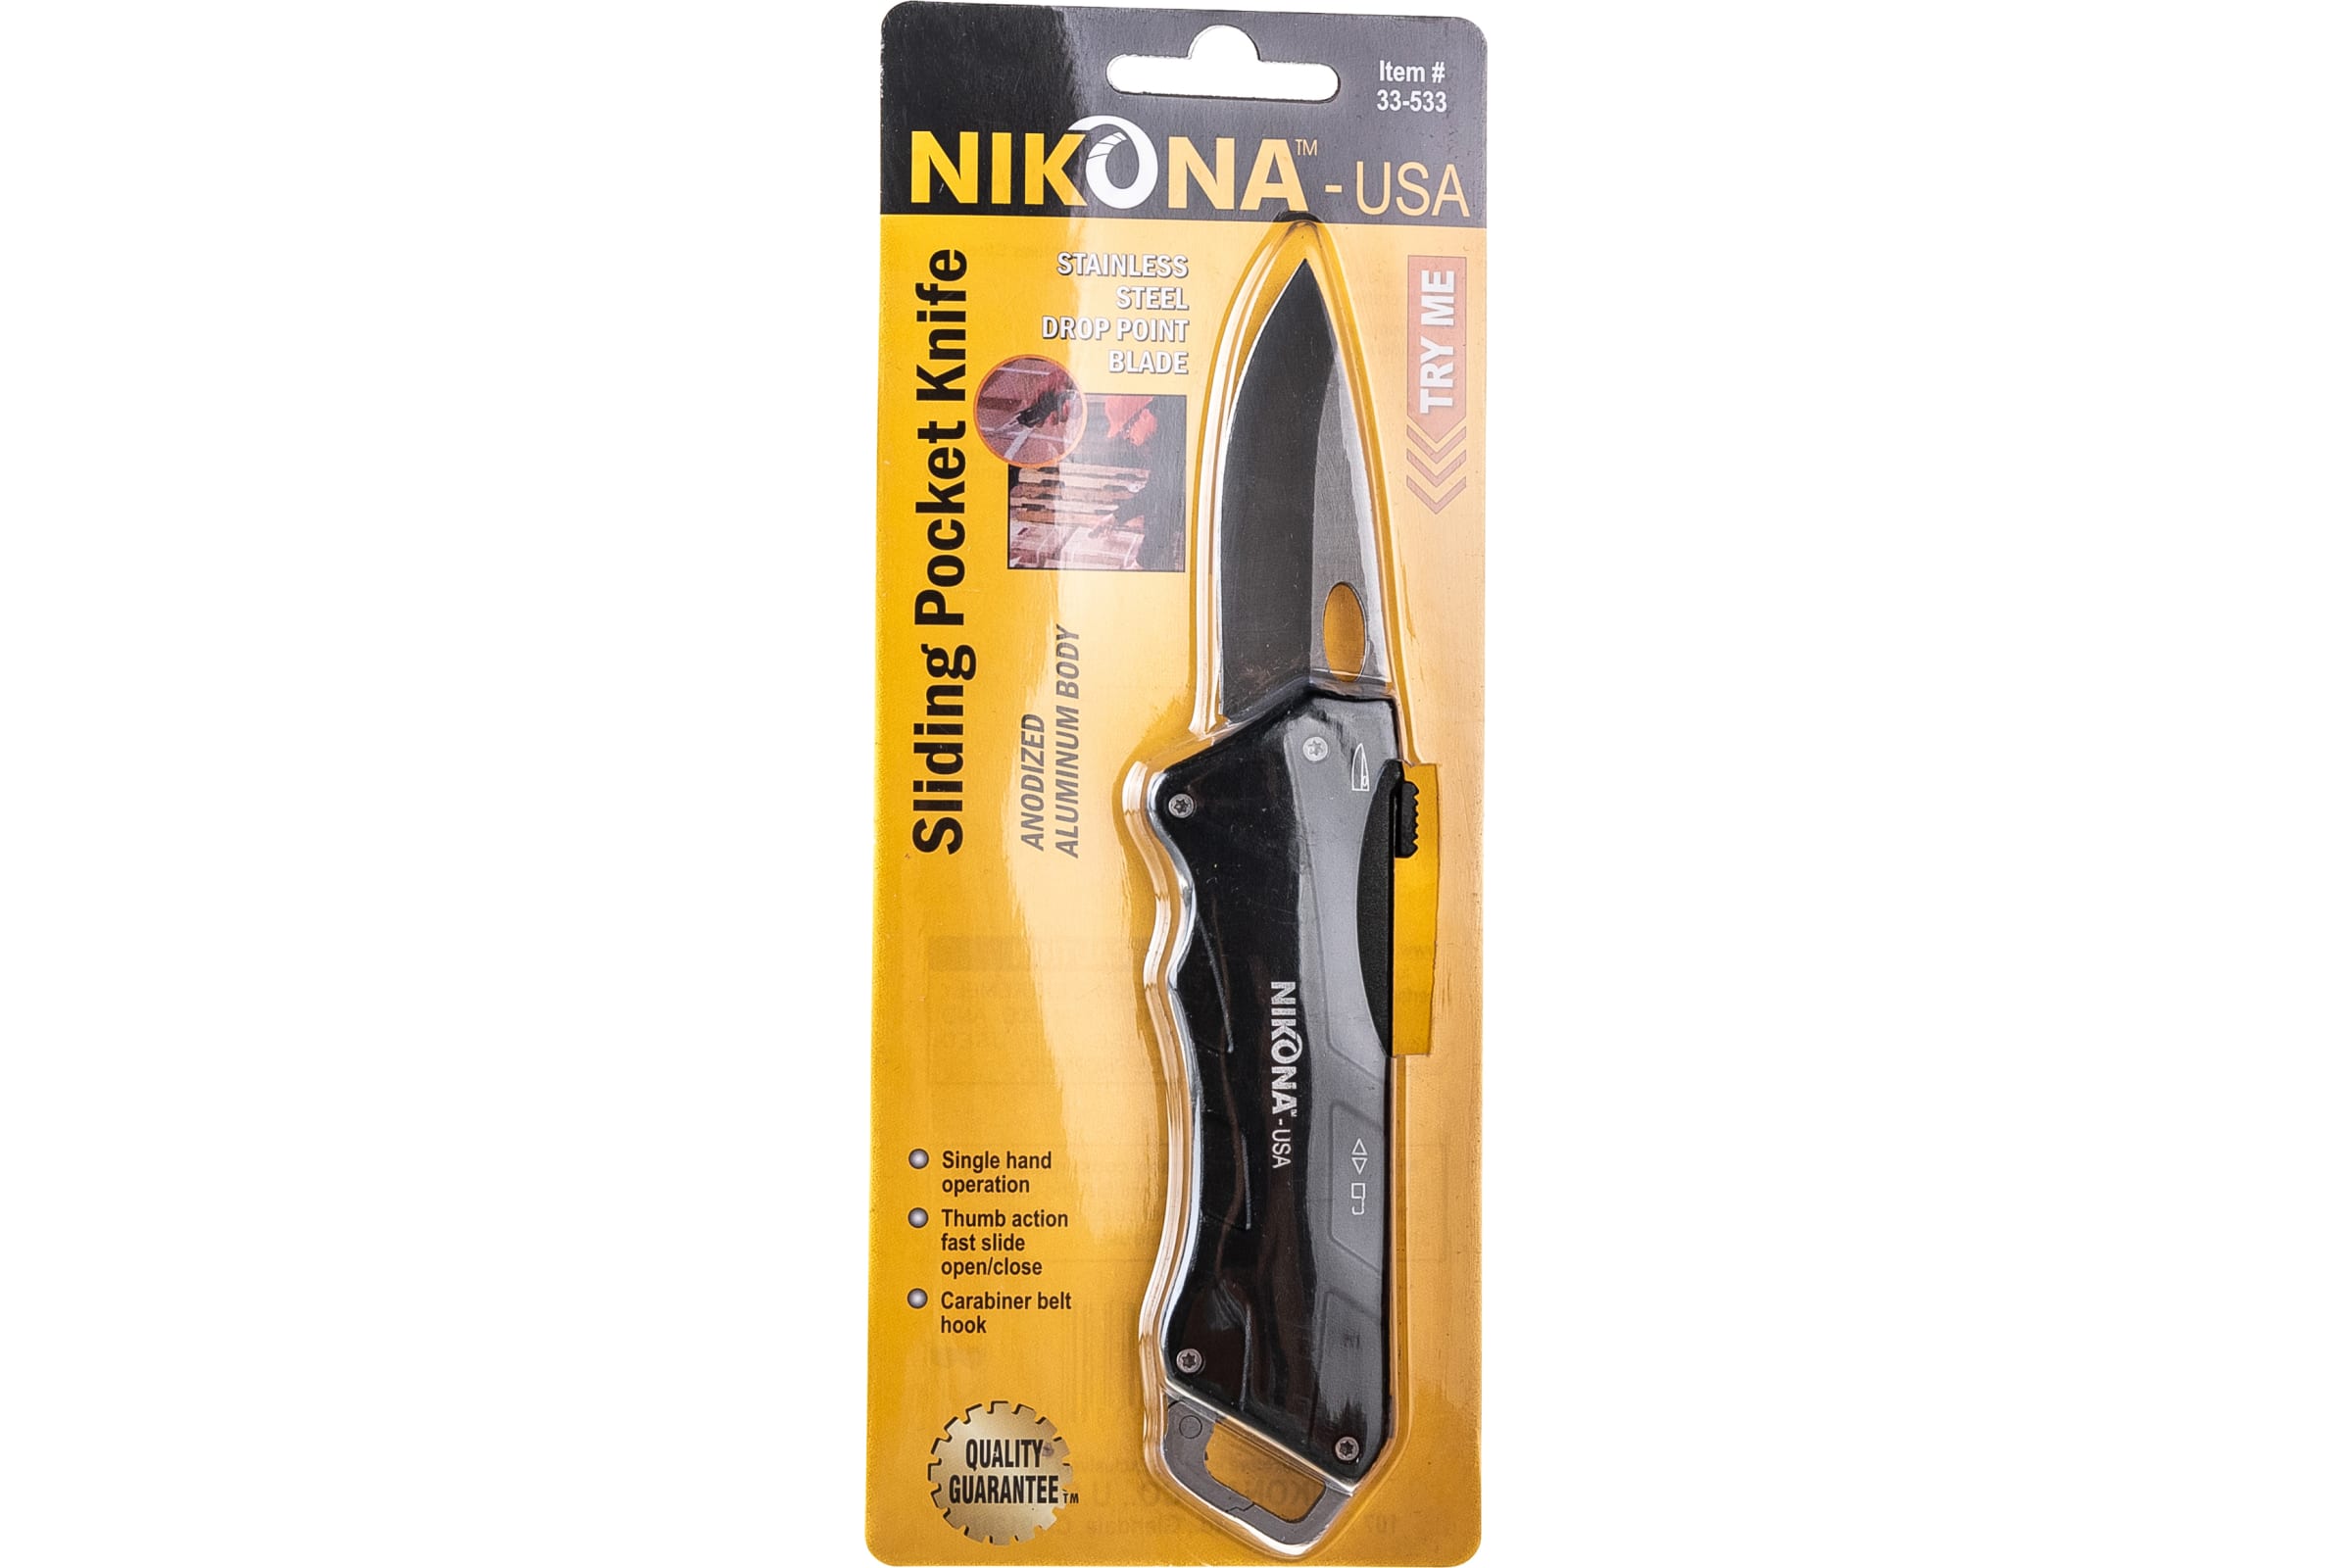 фото Nikona нож хозяйственный с выдвижным лезв. из нержавеющей стали с алюм.корпусом 33-533